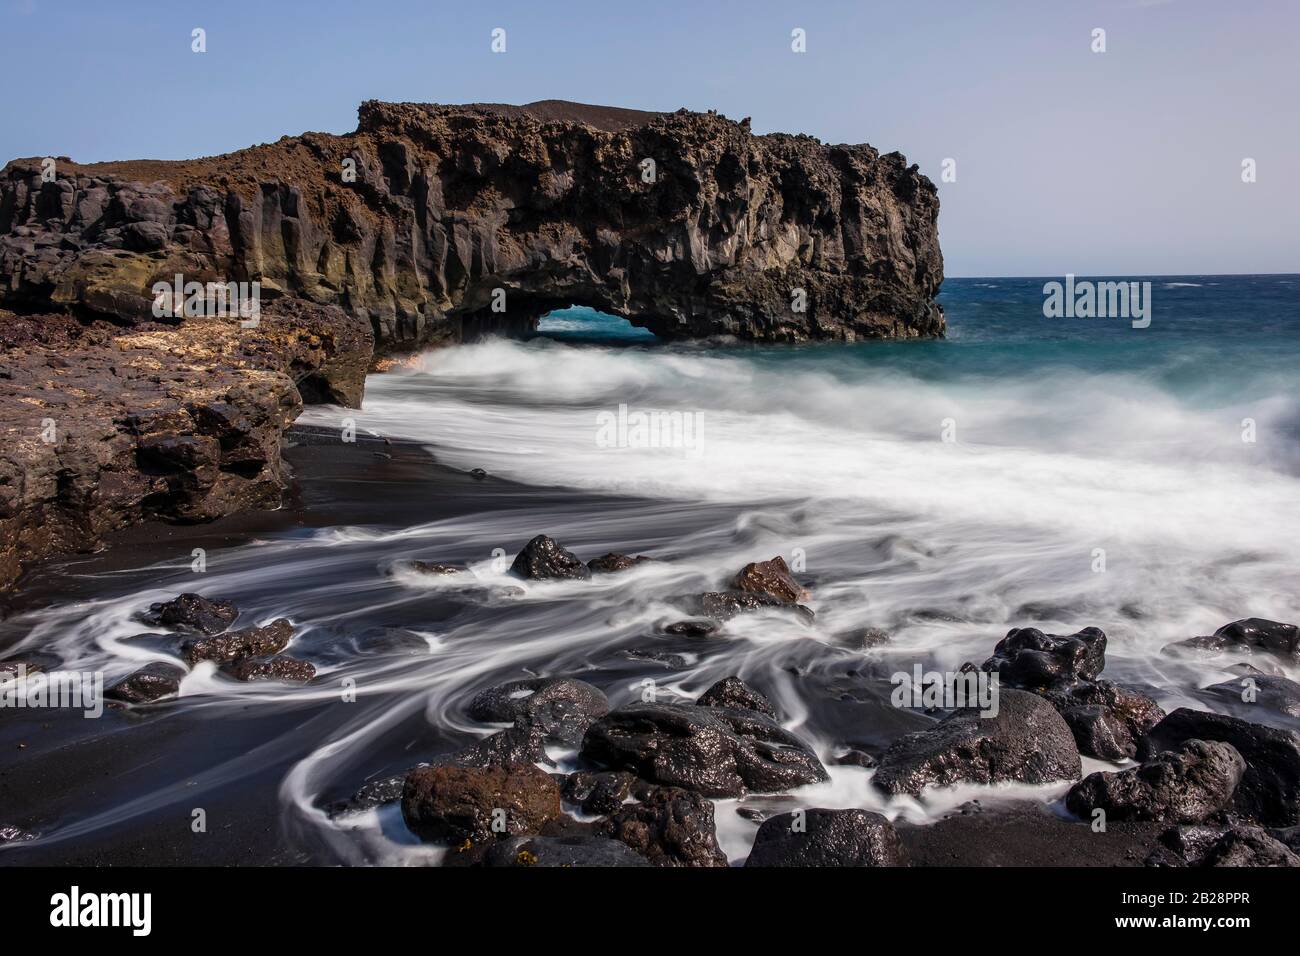 Surf und Wellen, Wasser fließt nach einer großen Welle zwischen Steinen zurück zum Atlantik, Südküste, La Palma, Kanarische Inseln, Kanarische Inseln, Spanien Stockfoto